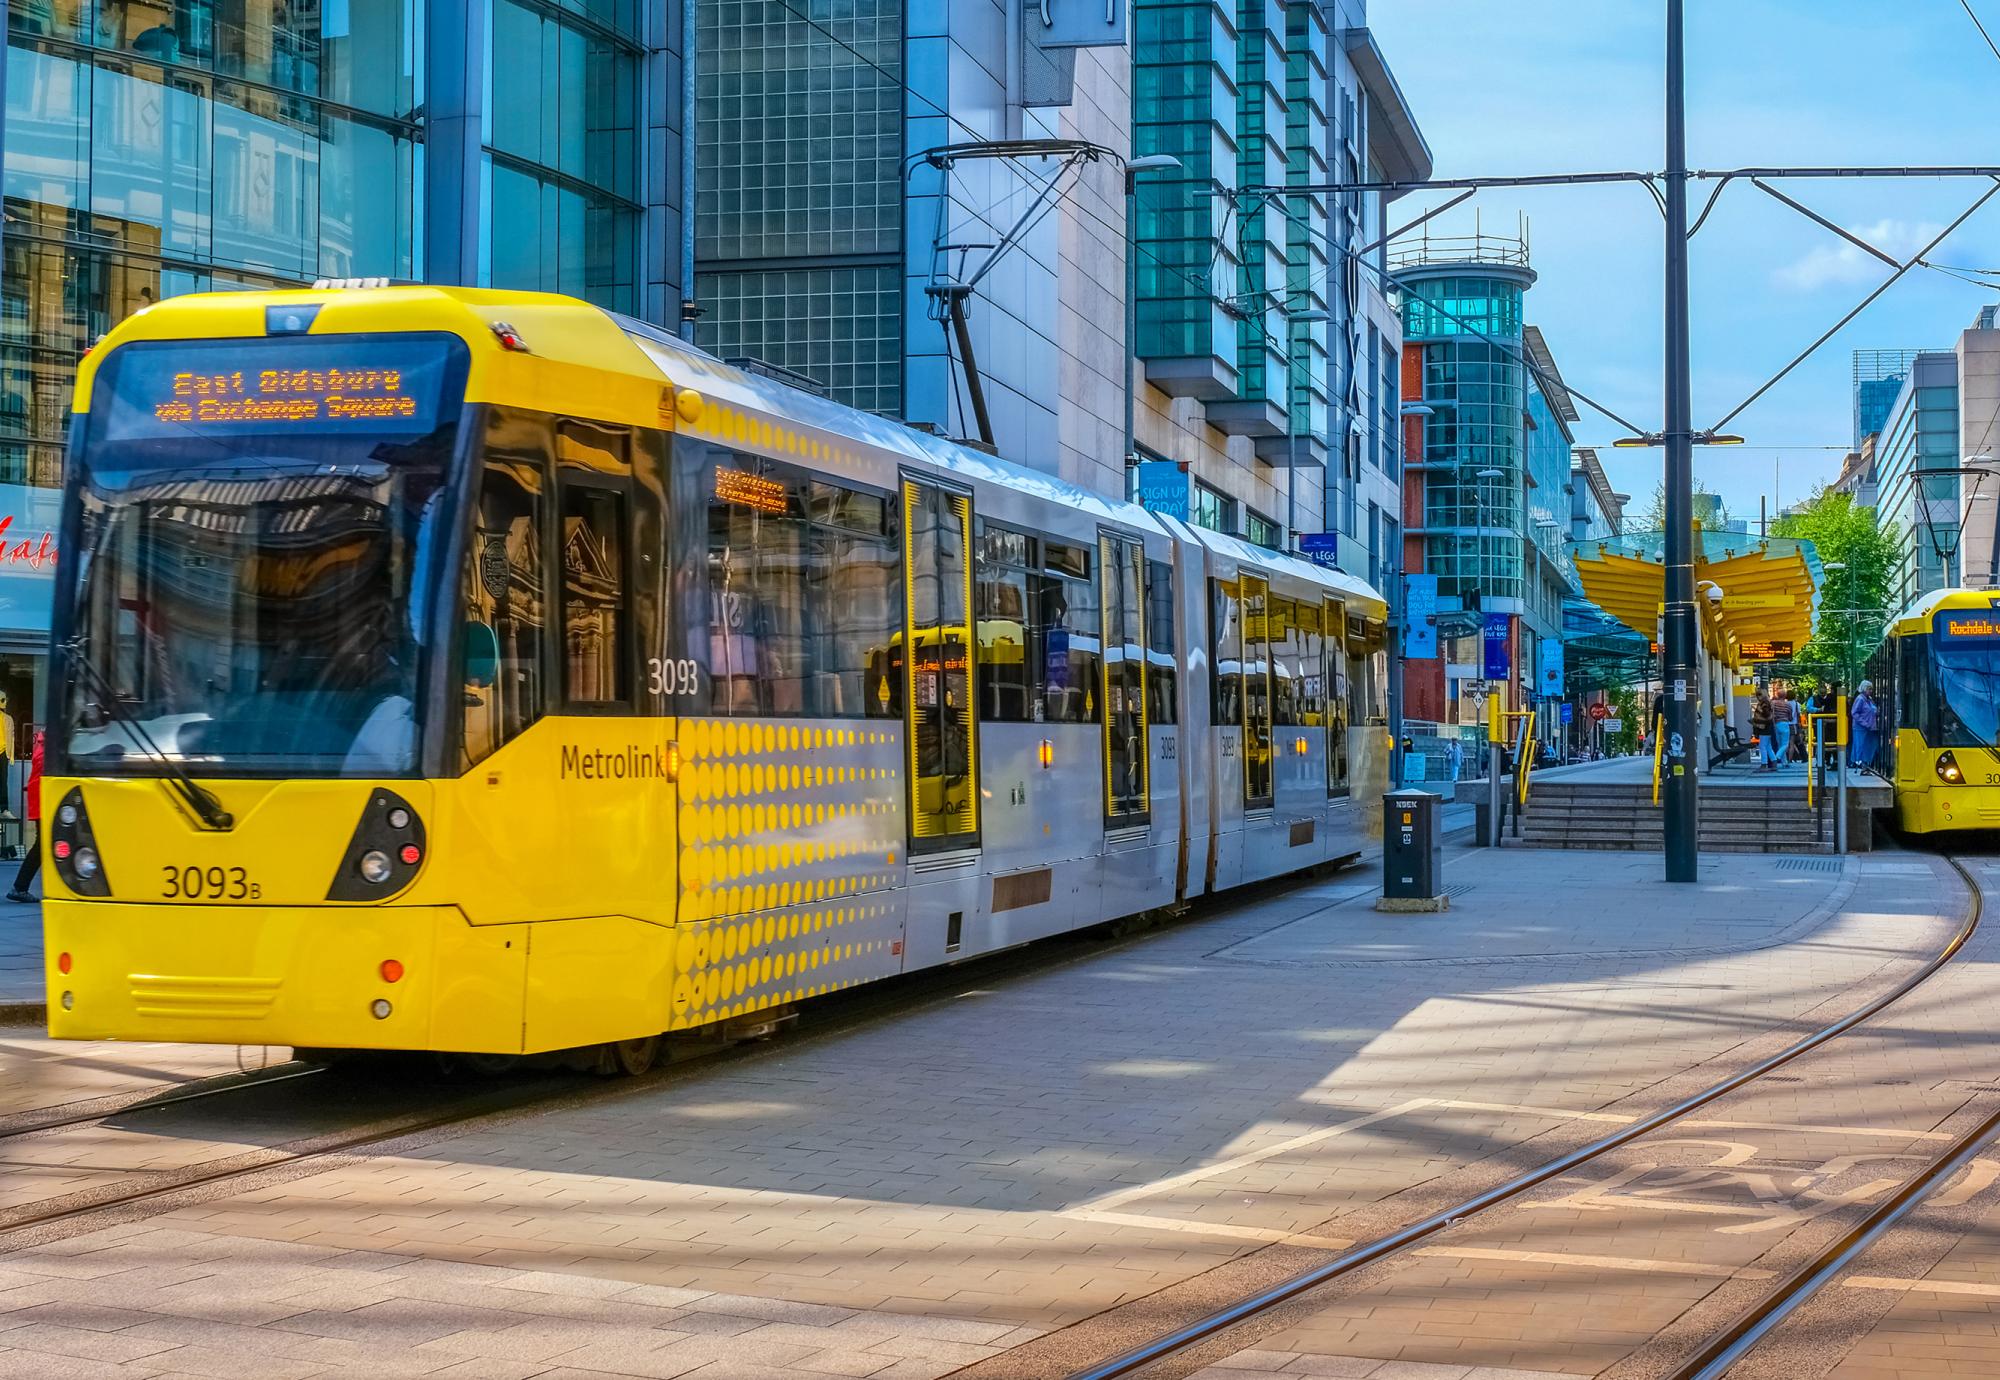 Light rail Metrolink tram in the city center of Manchester, UK. Via Istock 